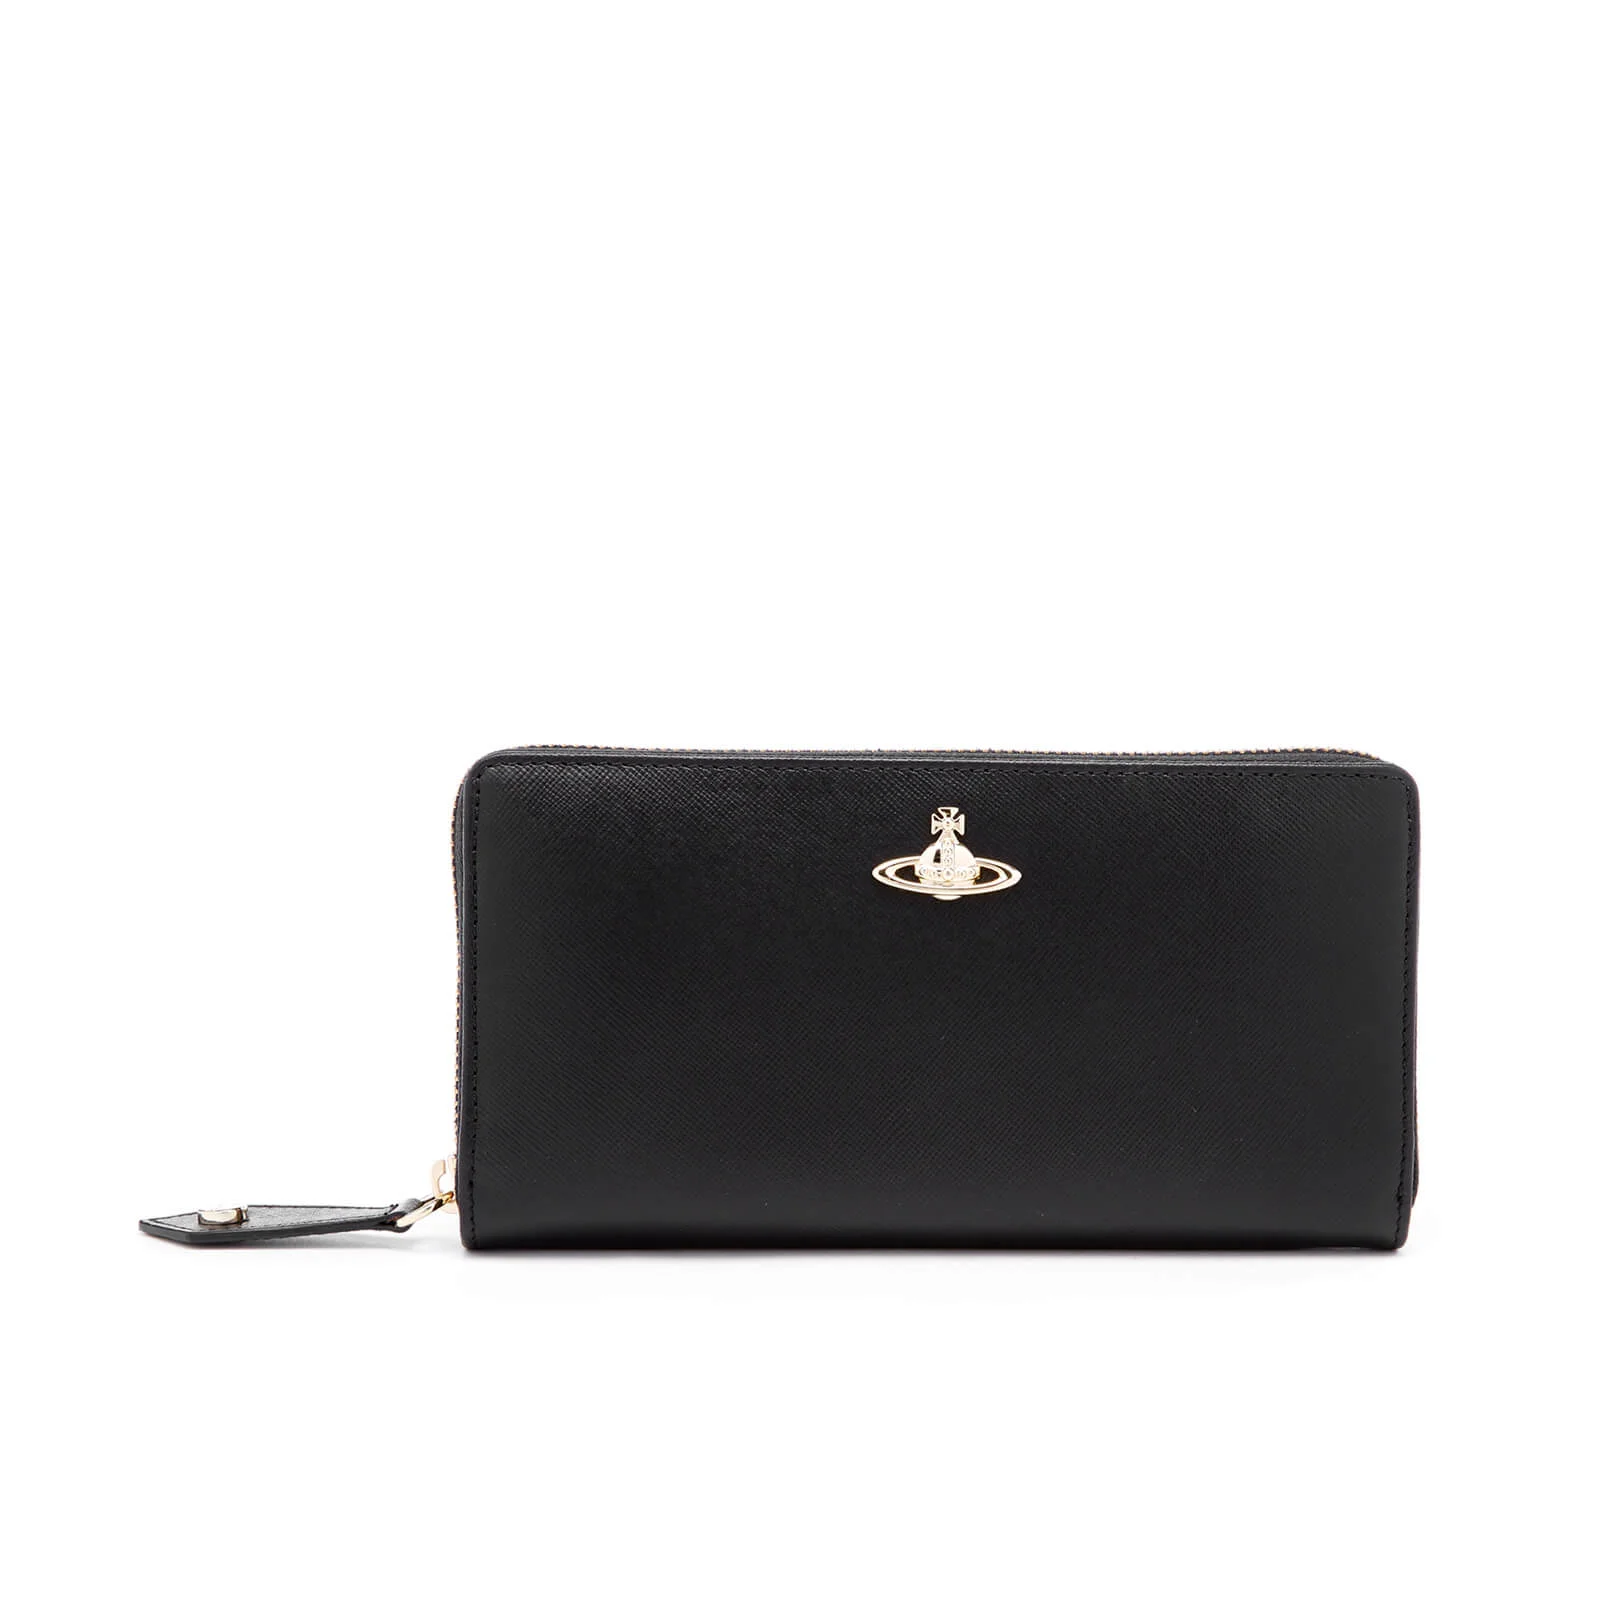 Vivienne Westwood Women's Opio Saffiano Leather Zip Around Wallet - Black Image 1